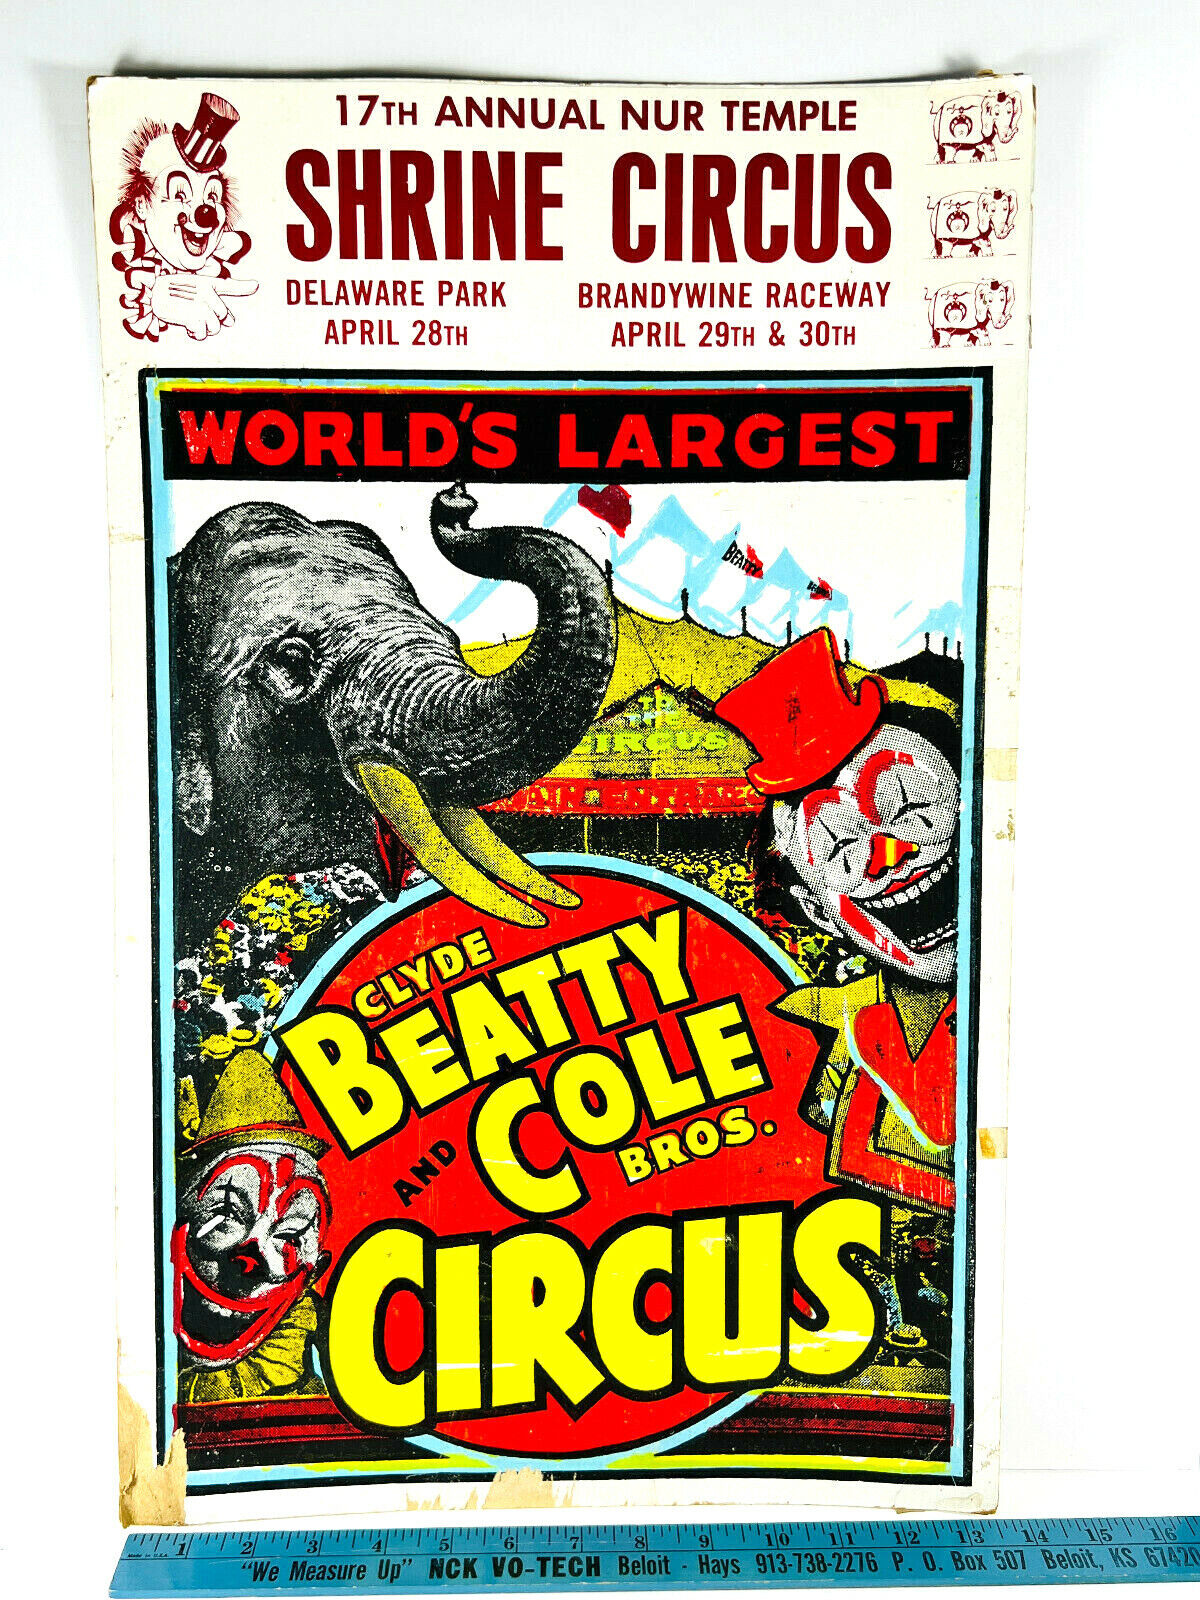 vtg Clyde Beatty Cole Bros Poster Willmington DE circus carnival bette leonard